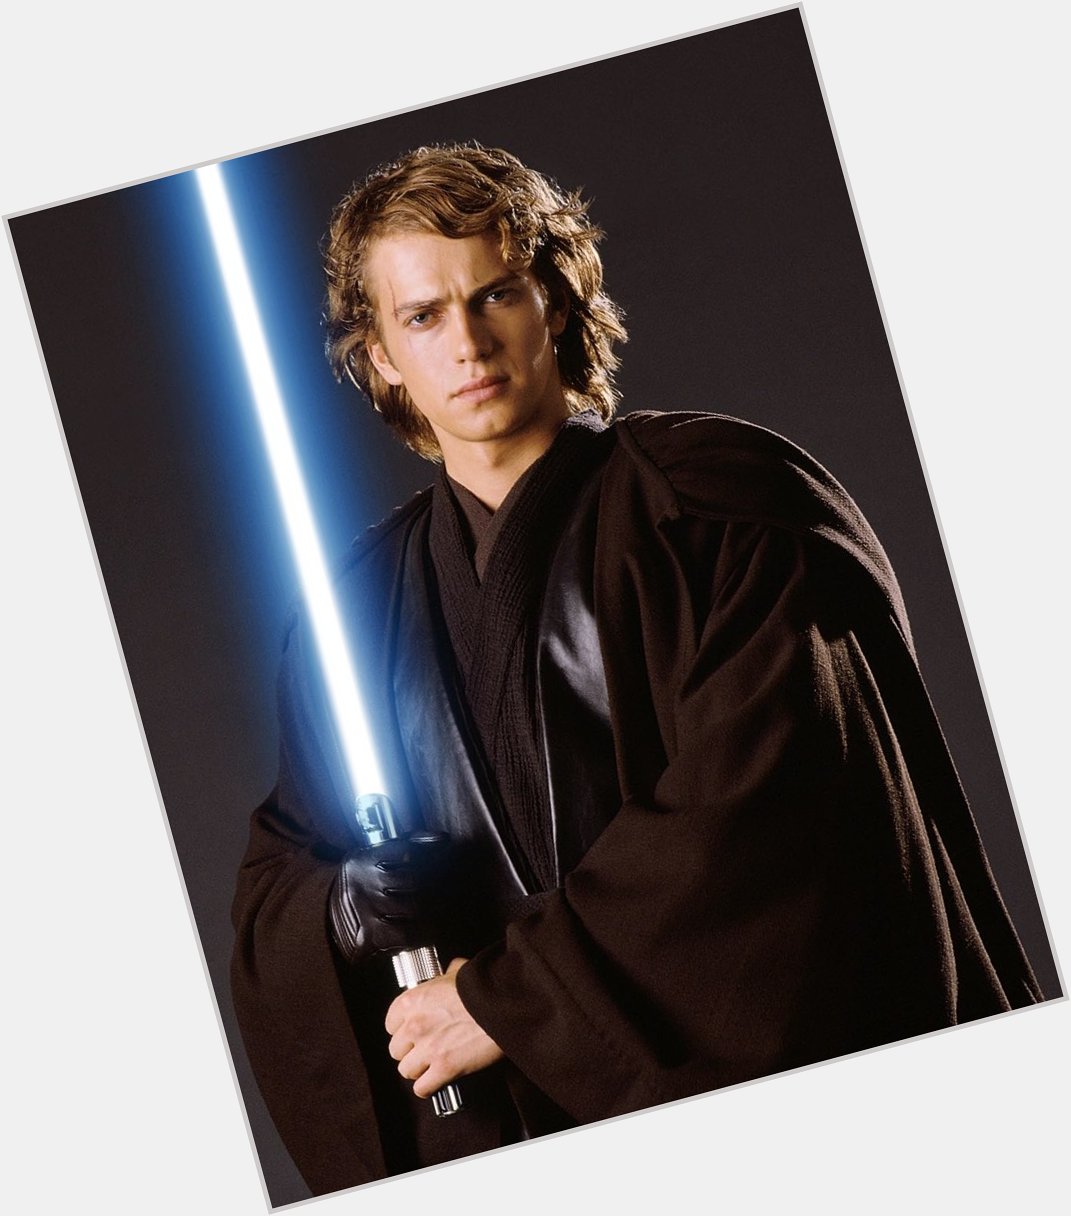 Good morning Star Wars message and a super happy birthday to Anakin himself, Hayden Christensen!! 